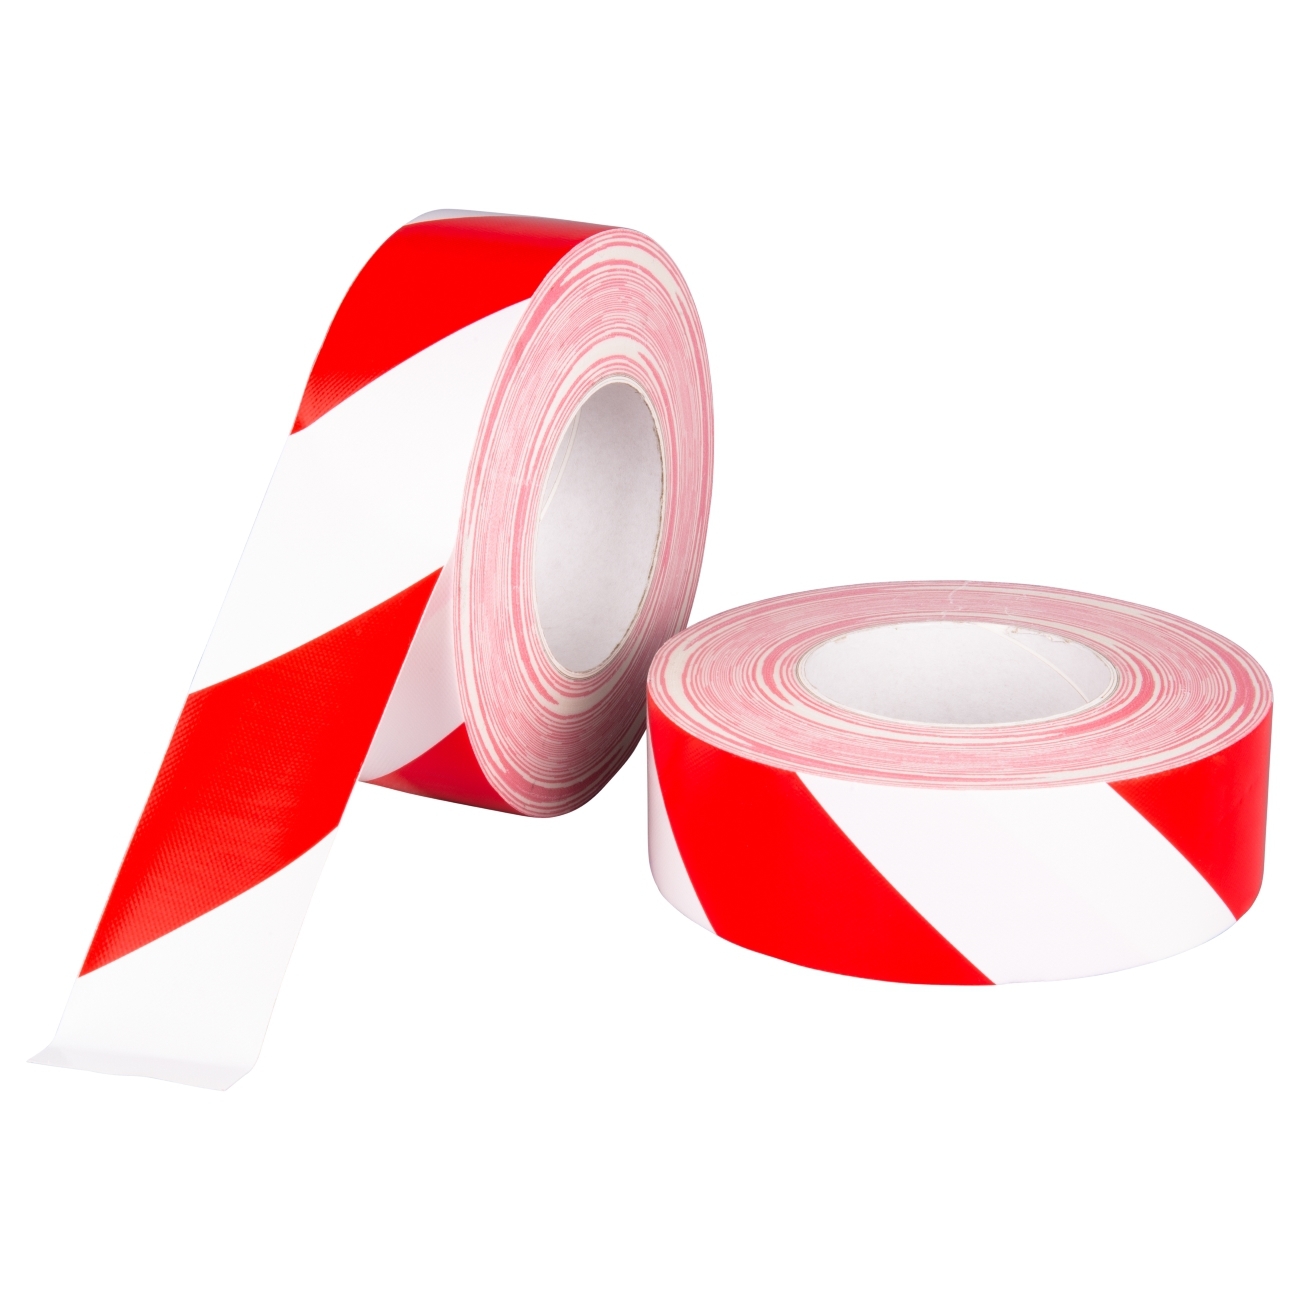 S-K-S 197 Fabric tape 19mmx50m red / white